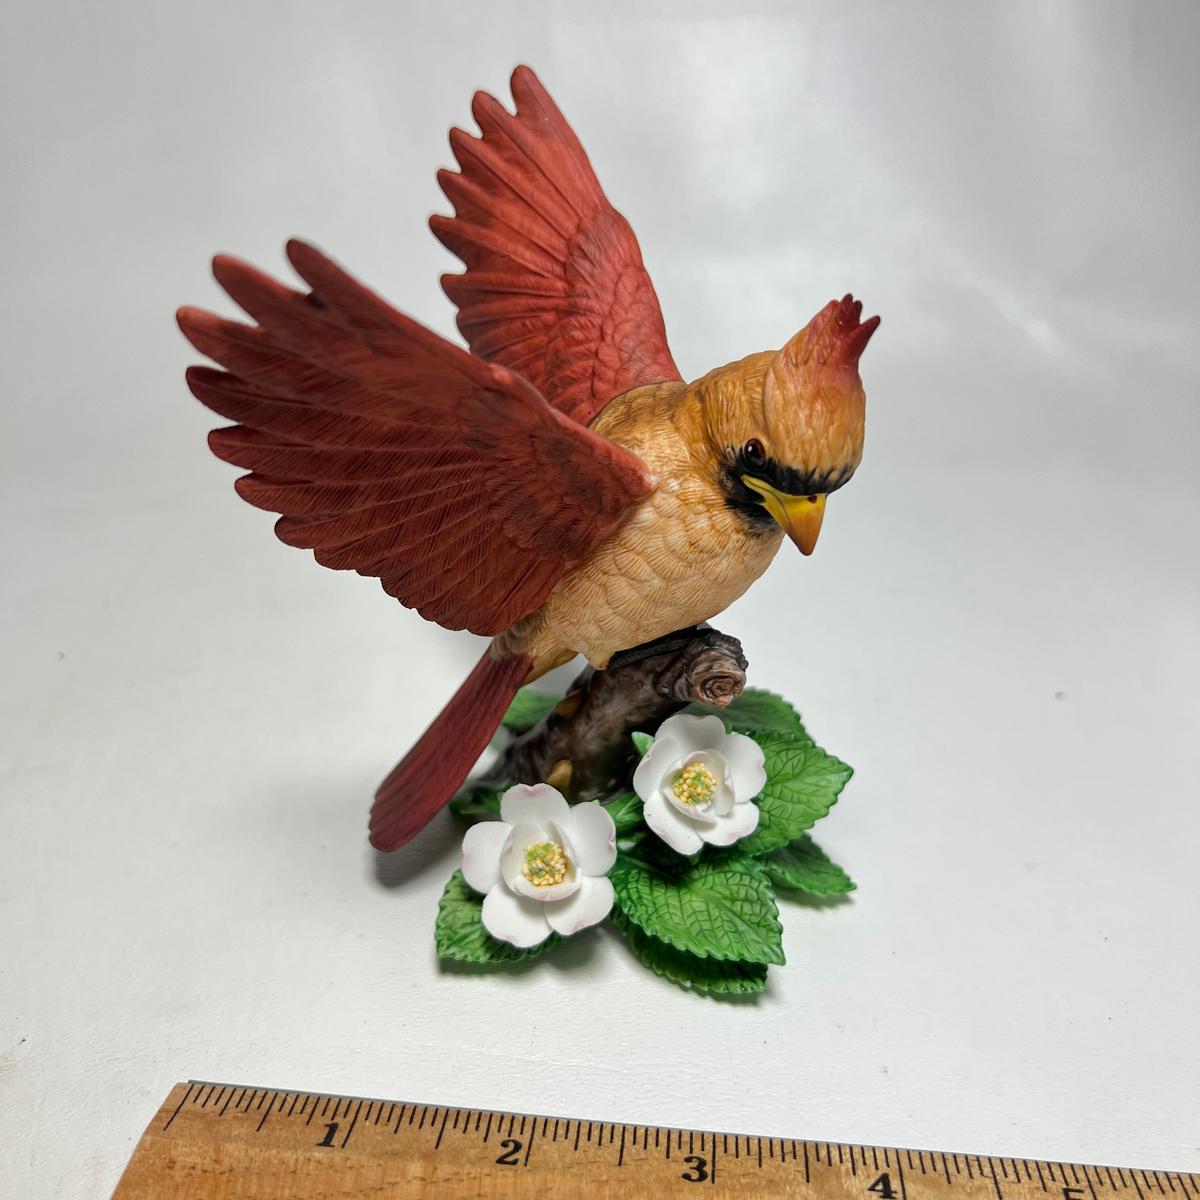 Lenox Fine Porcelain Bird Figurine - 1993 Female Cardinal